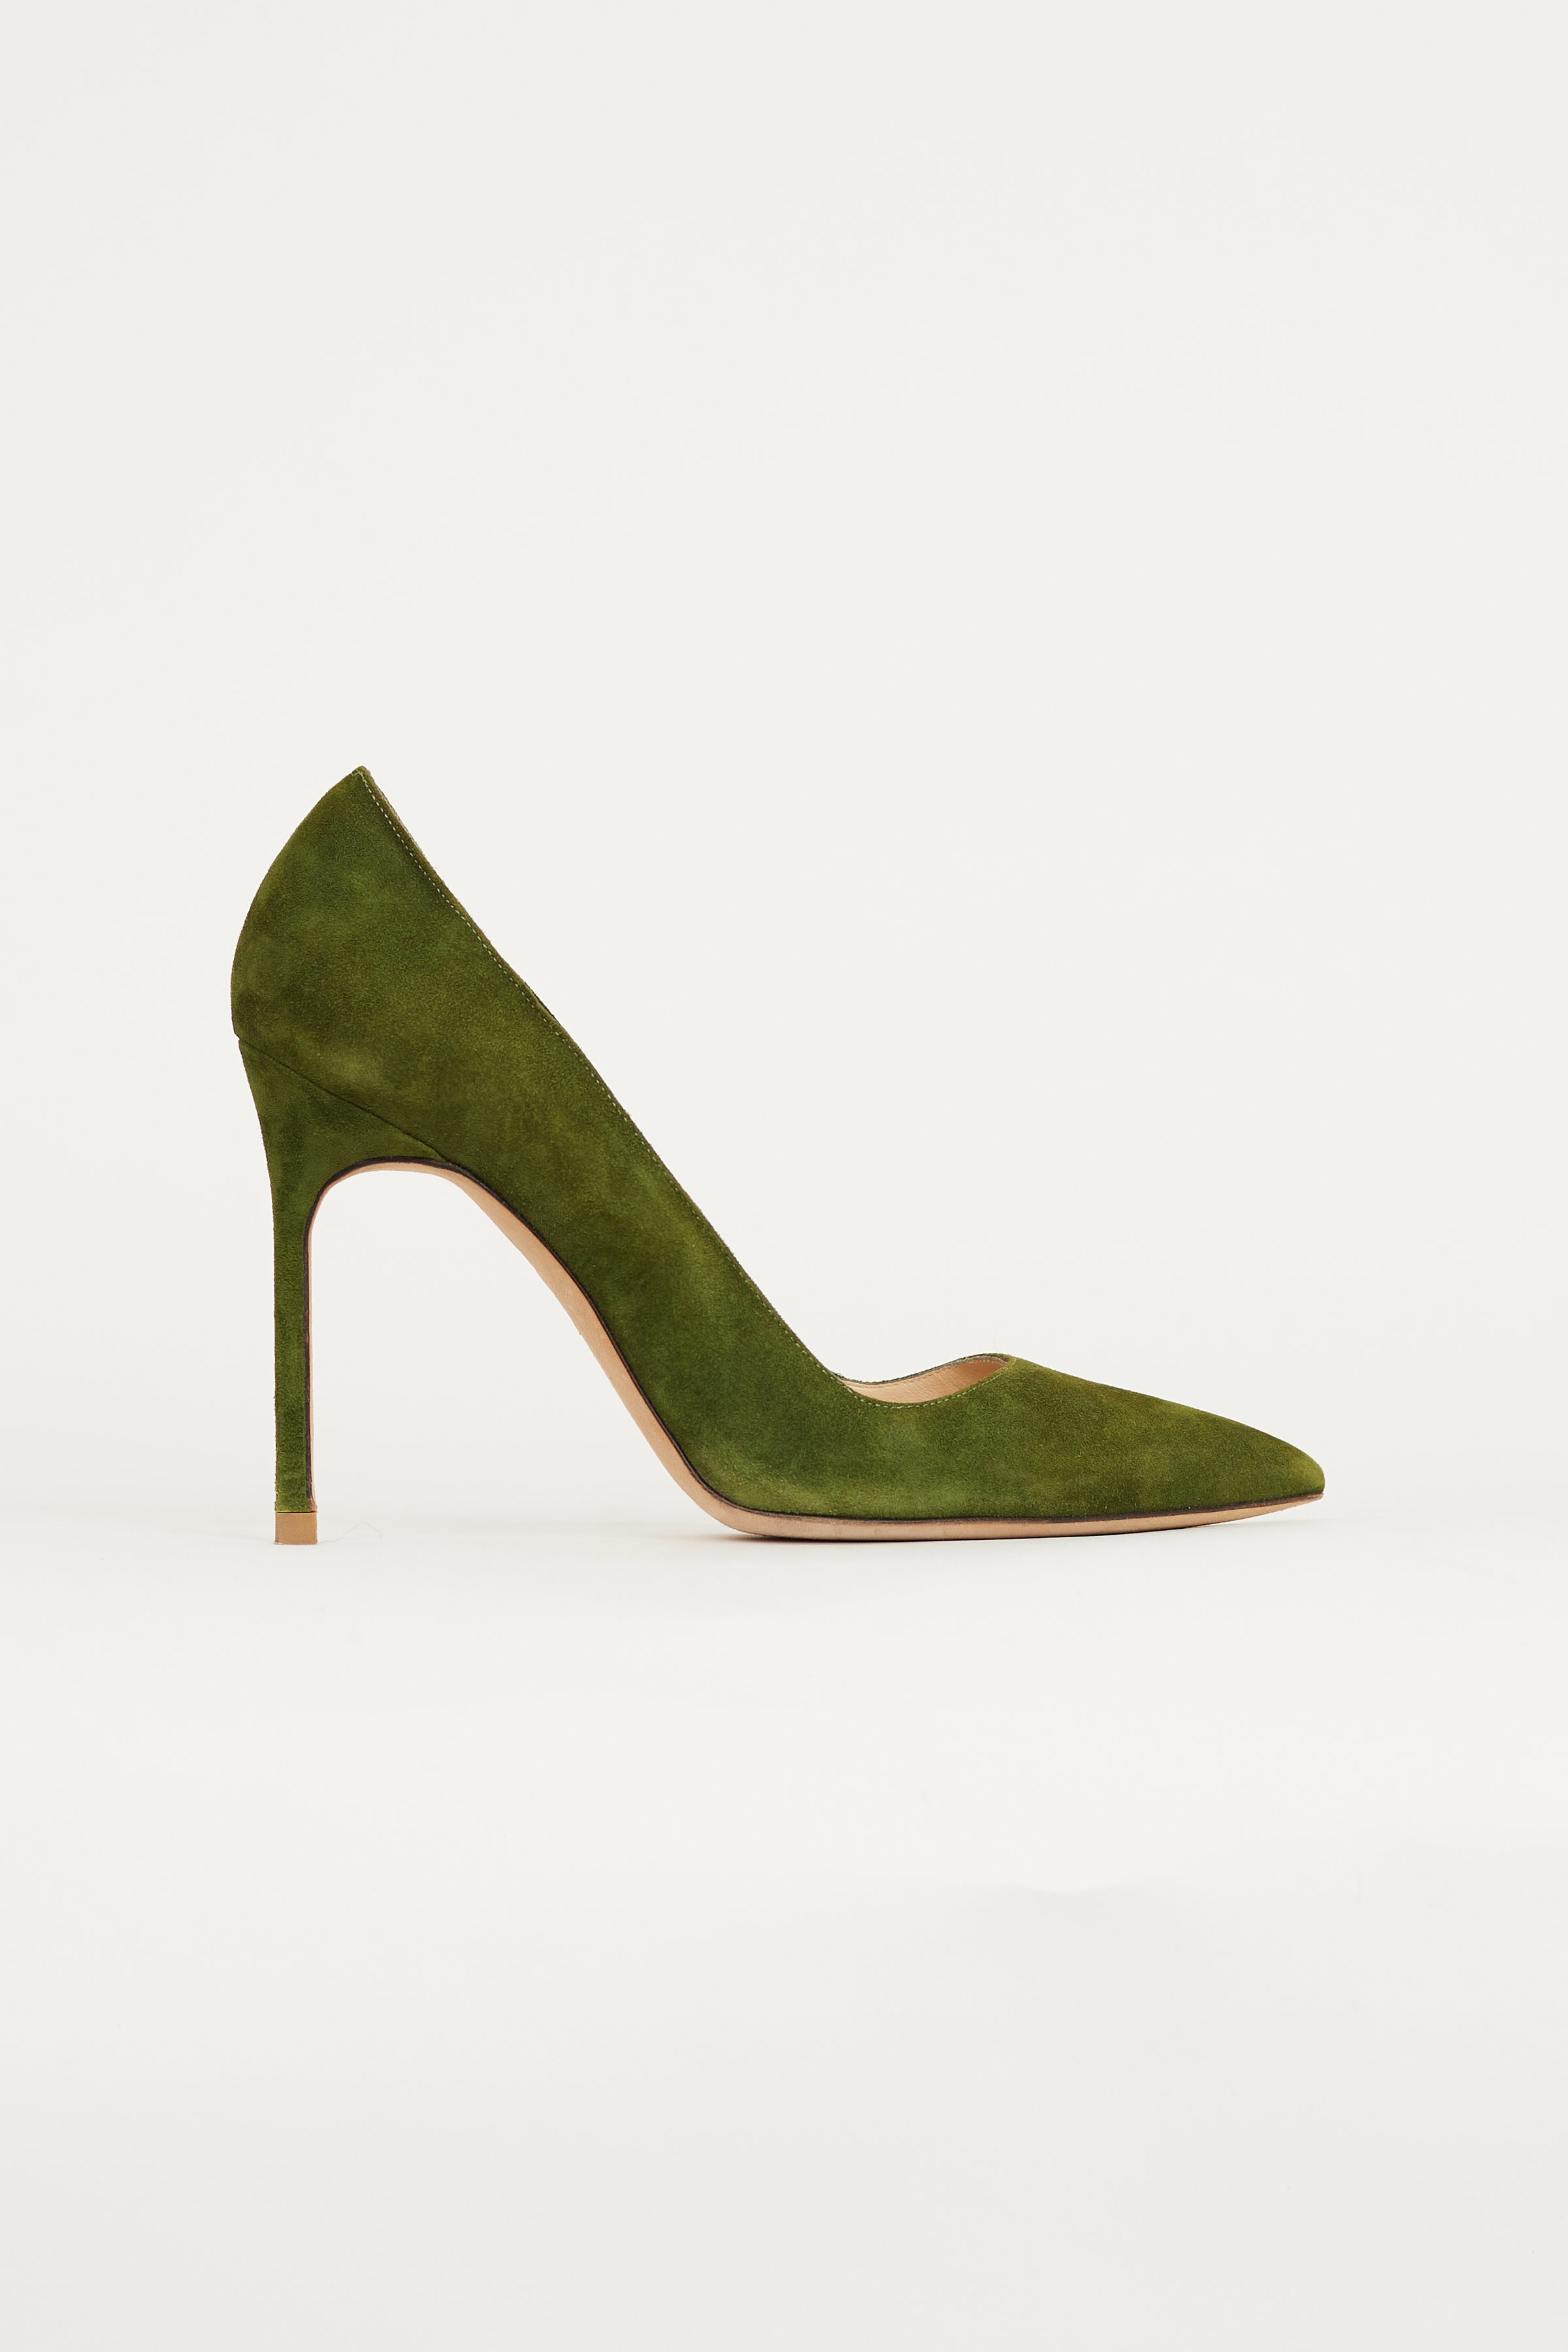 Michaela Moss Green Heels, Women's Fashion, Footwear, Heels on Carousell